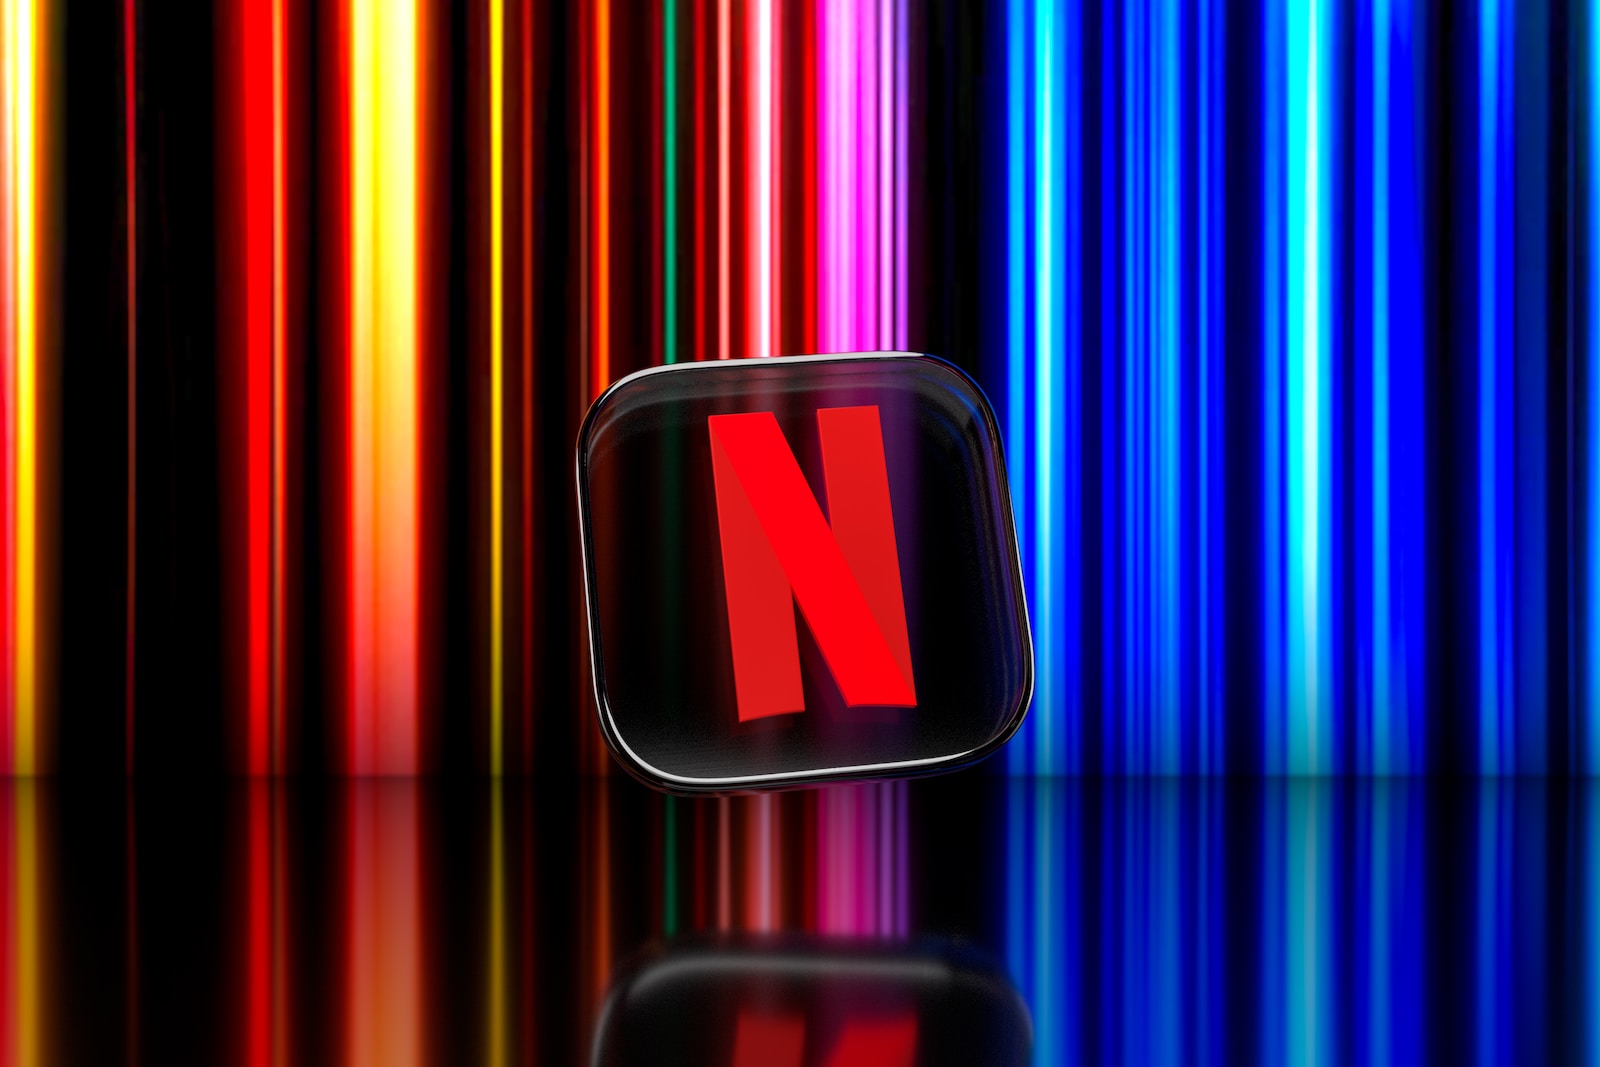 L'offre "Standard" de Netflix pourrait bientôt disparaître en France